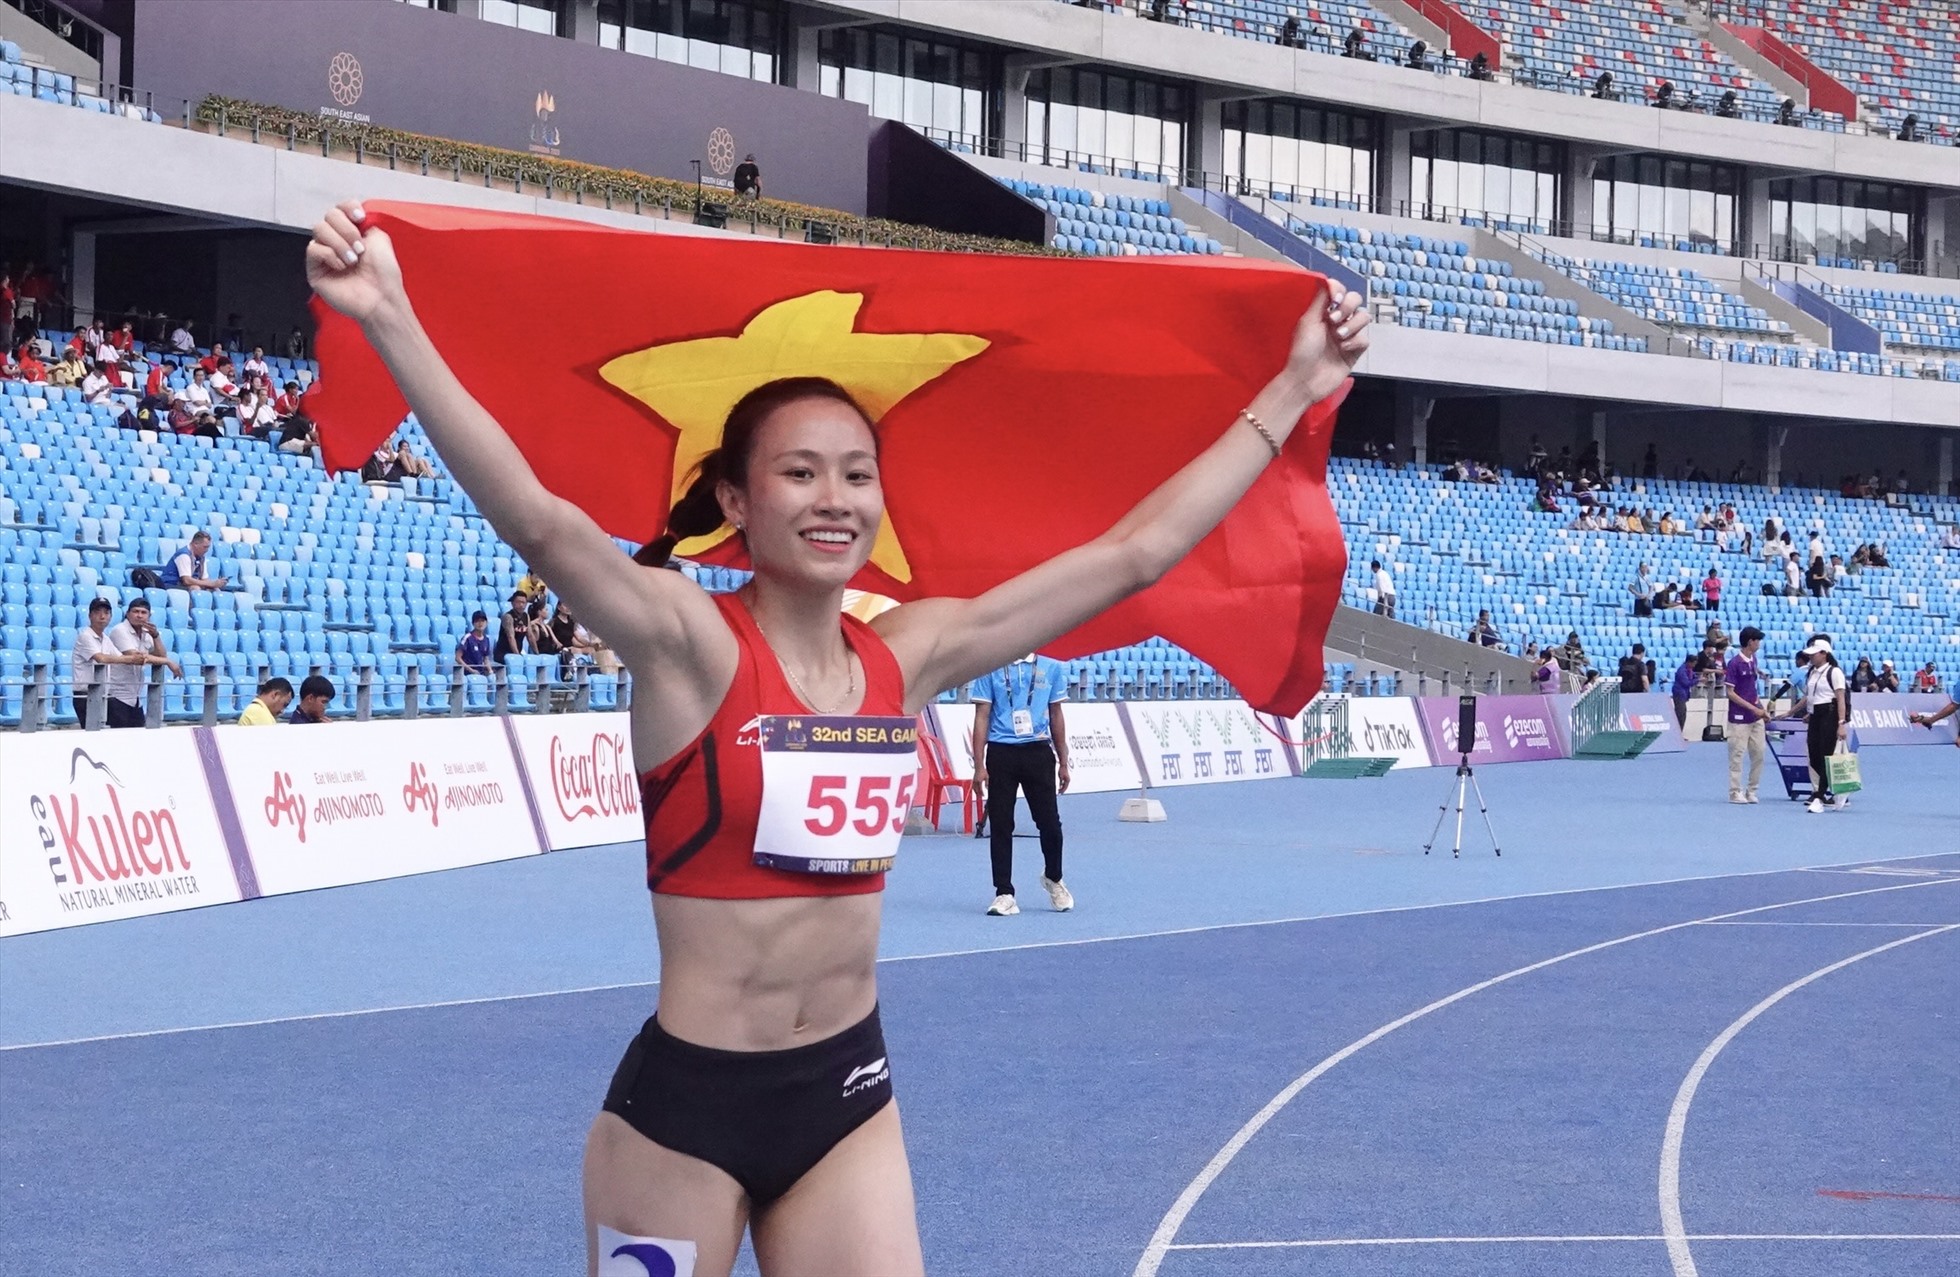 Mỹ Tiên giúp điền kinh Việt Nam bảo vệ thành công tấm huy chương vàng SEA Games nội dung 100m rào nữ. Ảnh: Duy Nam